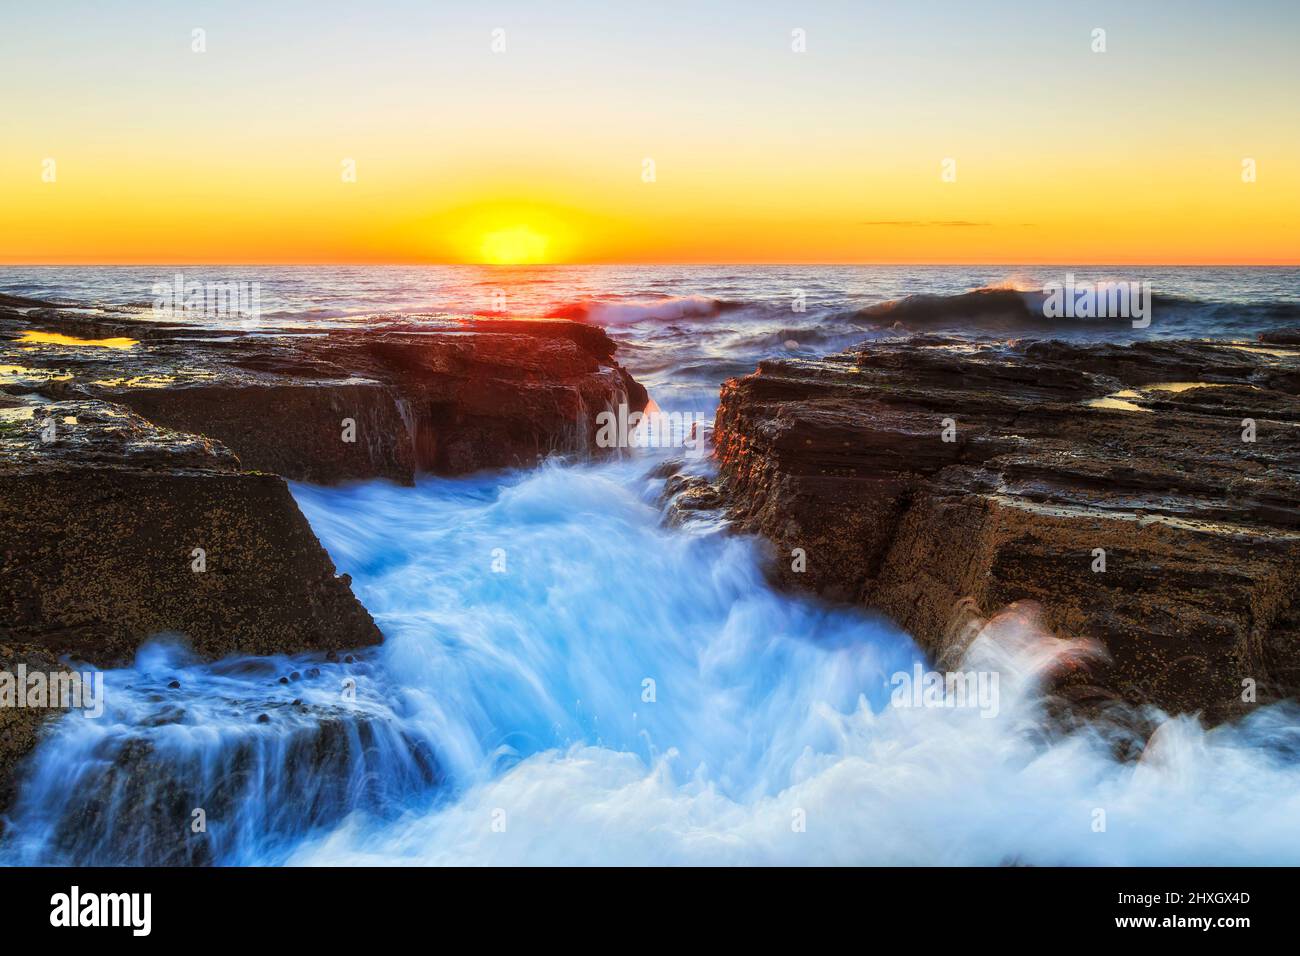 Narrabeen Beach arenaria rocce di un promontorio all'alba colpito dalle onde dell'oceano pacifico. Foto Stock